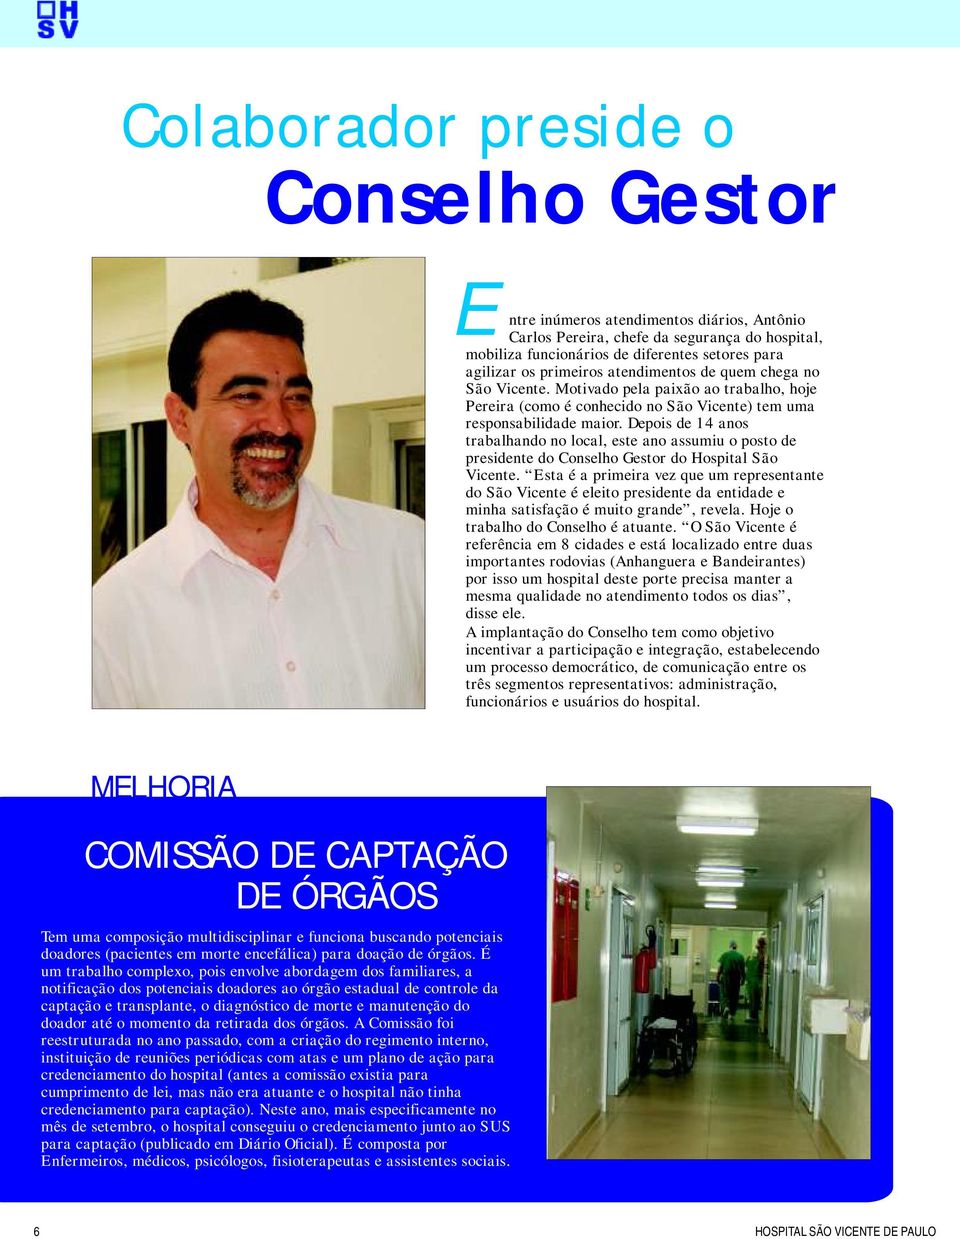 Depois de 14 anos trabalhando no local, este ano assumiu o posto de presidente do Conselho Gestor do Hospital São Vicente.